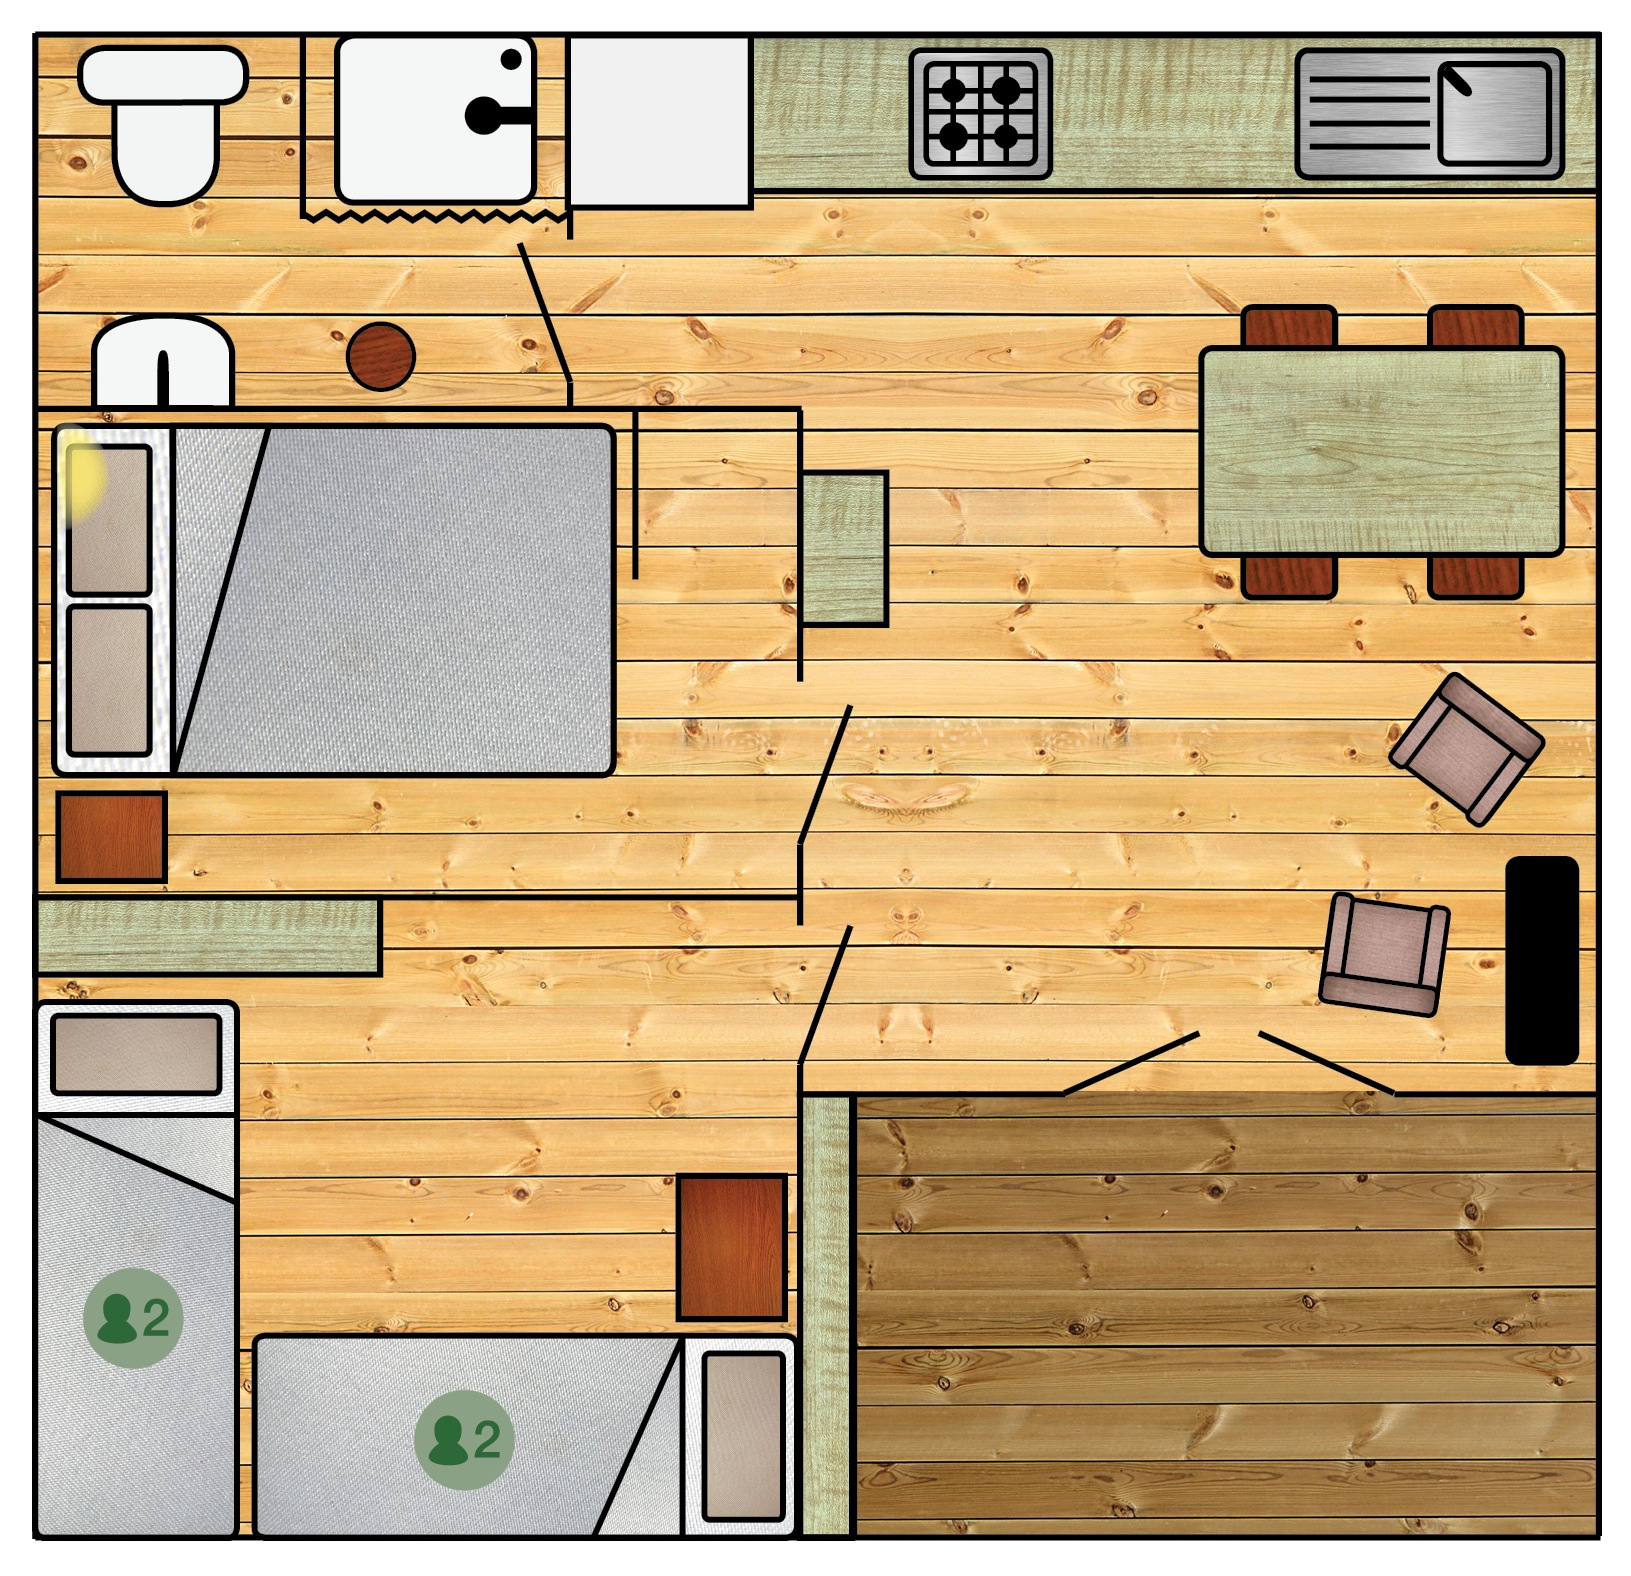 Met woonruimte voor 6 personen is de blokhut ideaal voor een gezin of vriendengroep.